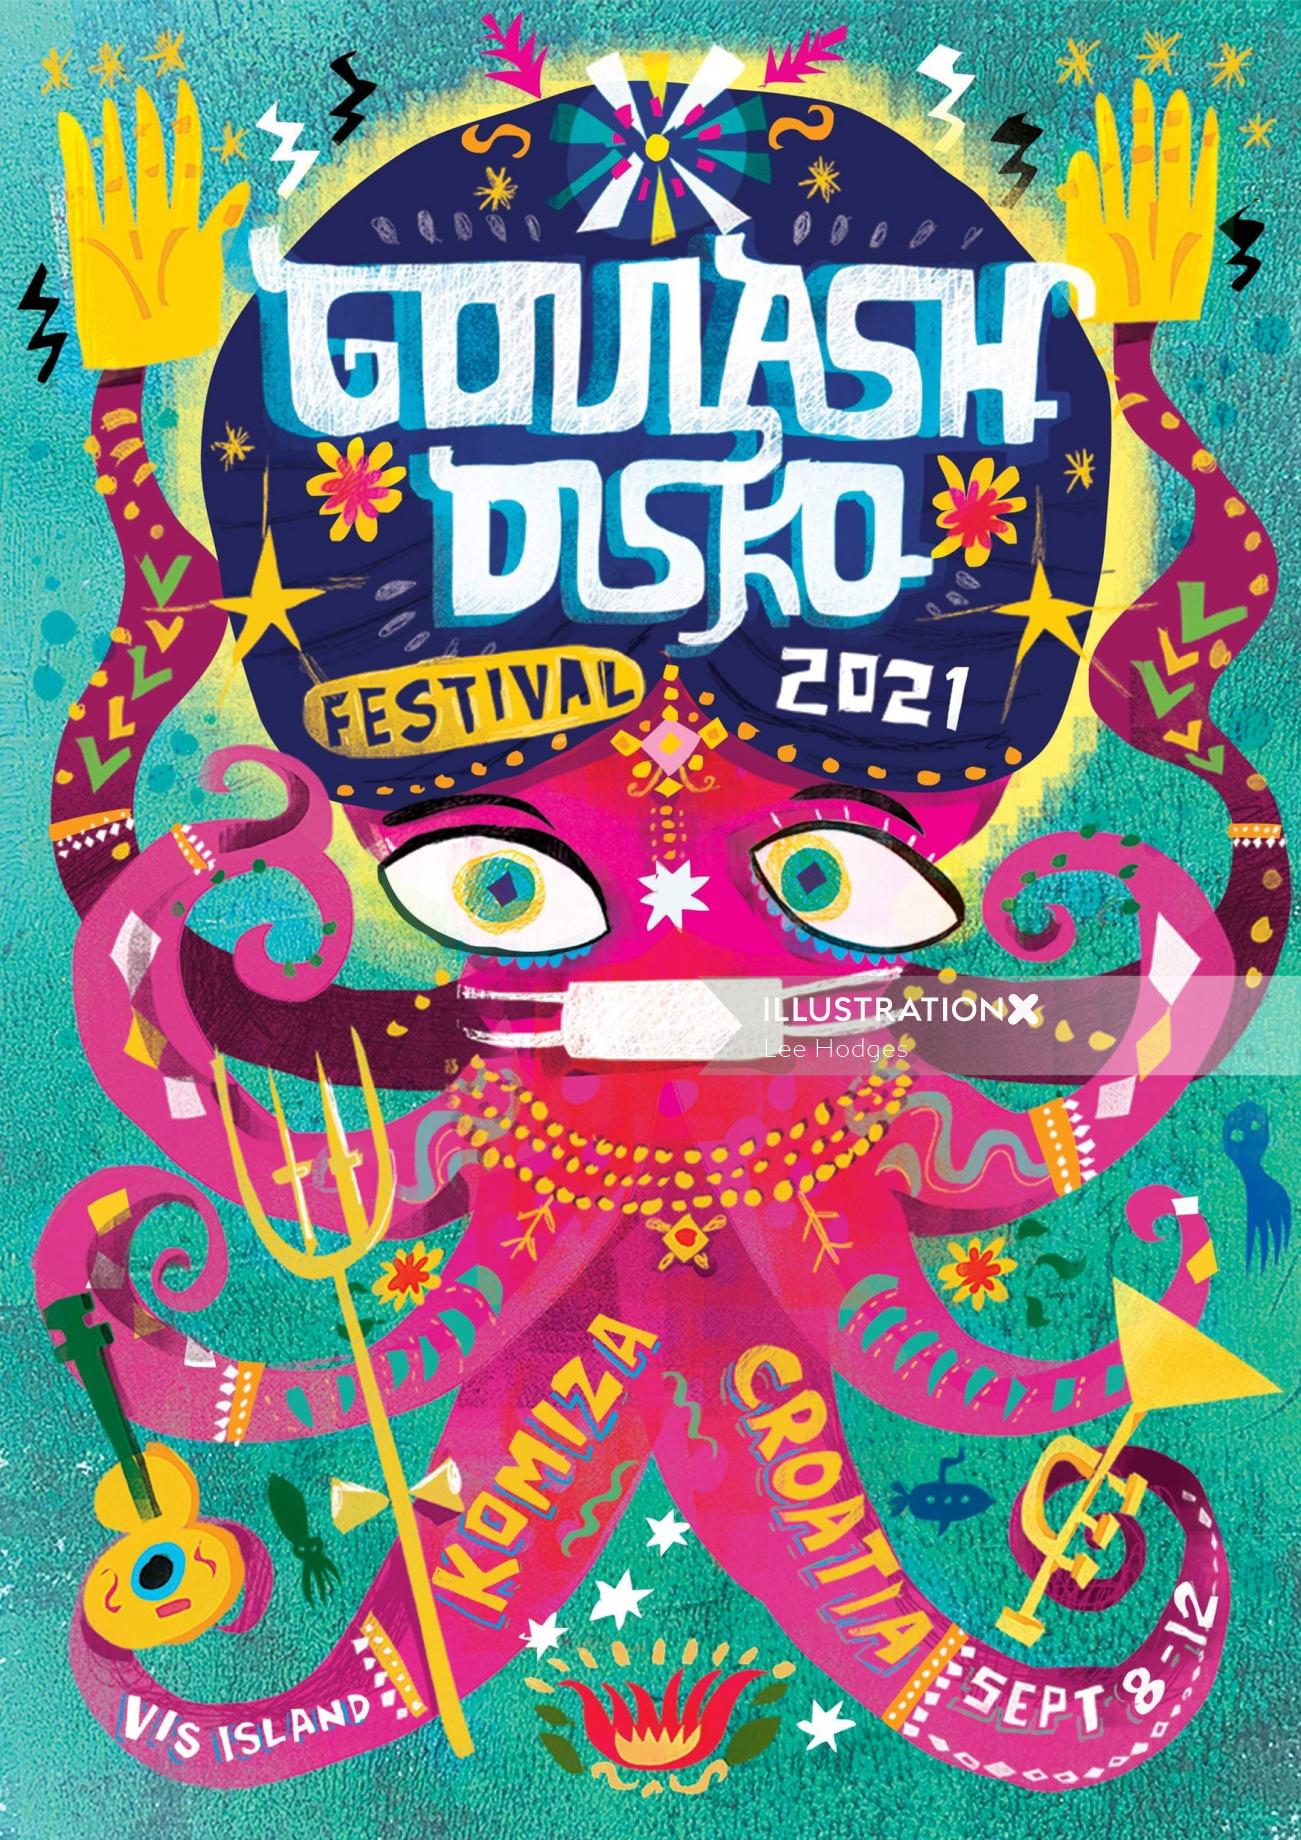 Arte do cartaz do Goulash Disko Festival 2021